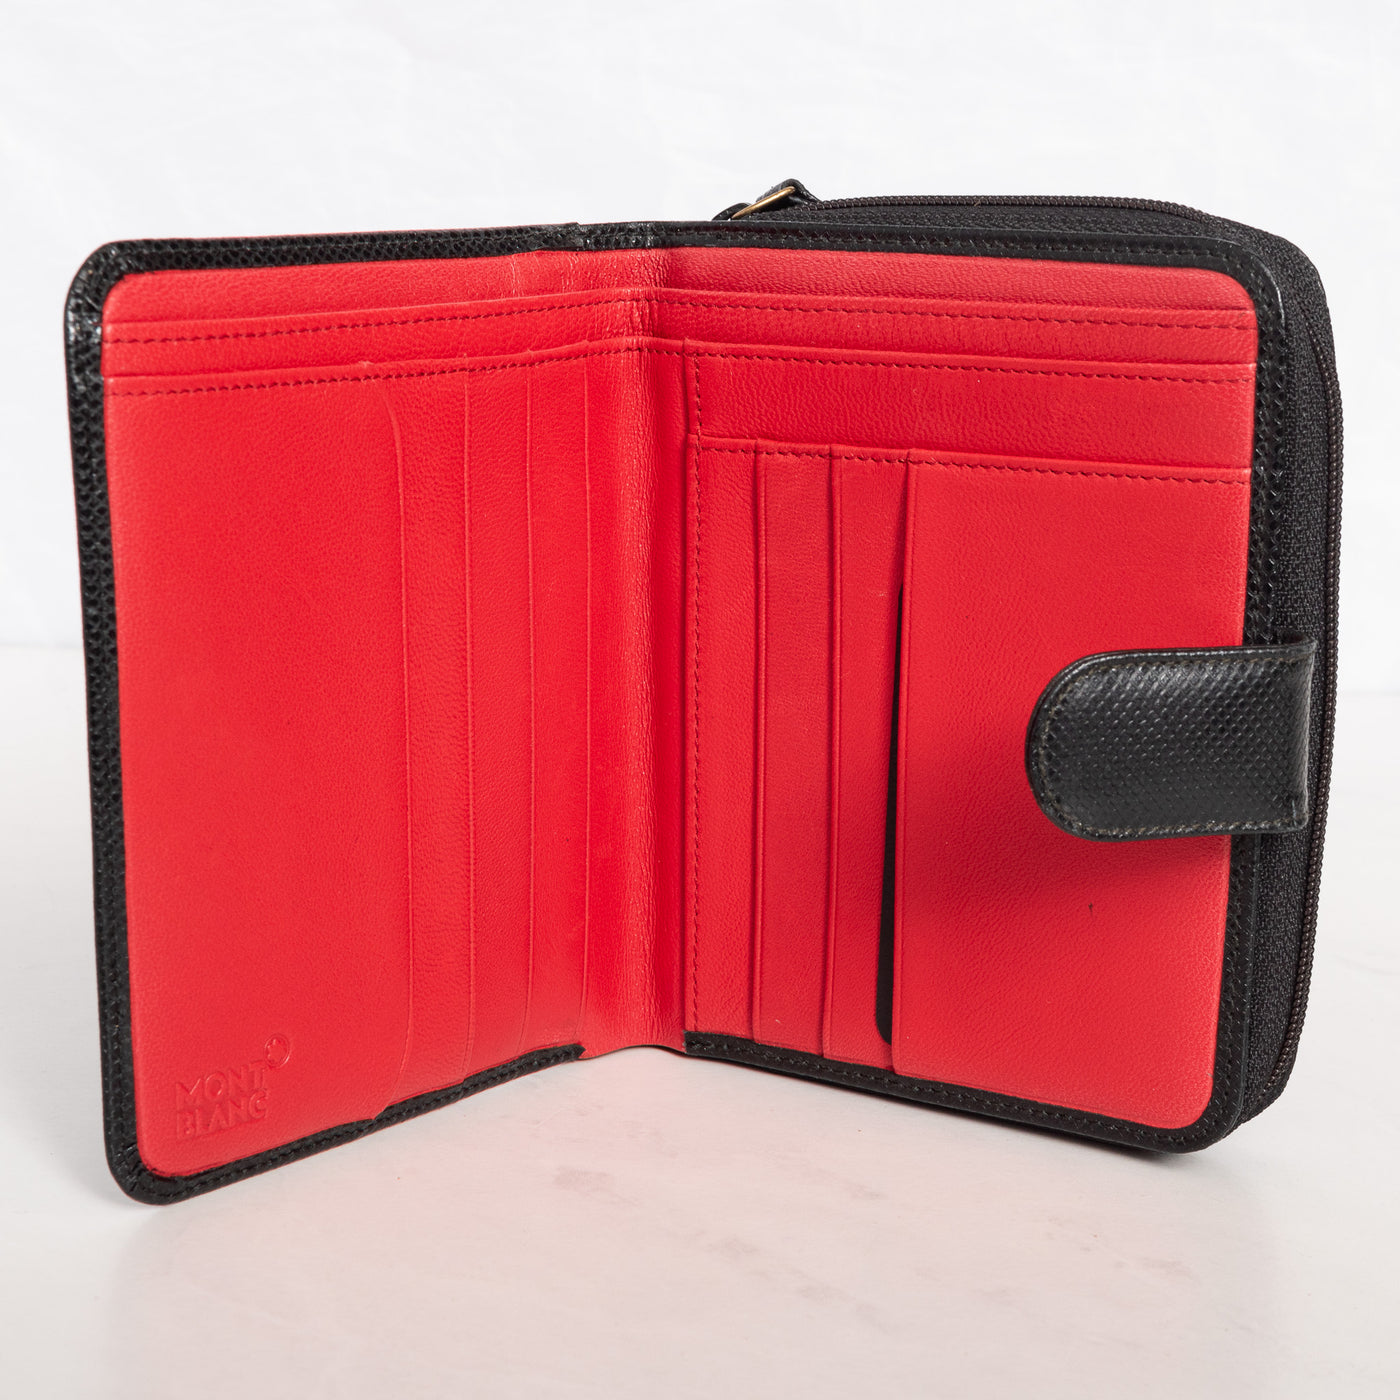 Montblanc Leather Goods La Vie de Boheme 6cc Wallet 7350 inside